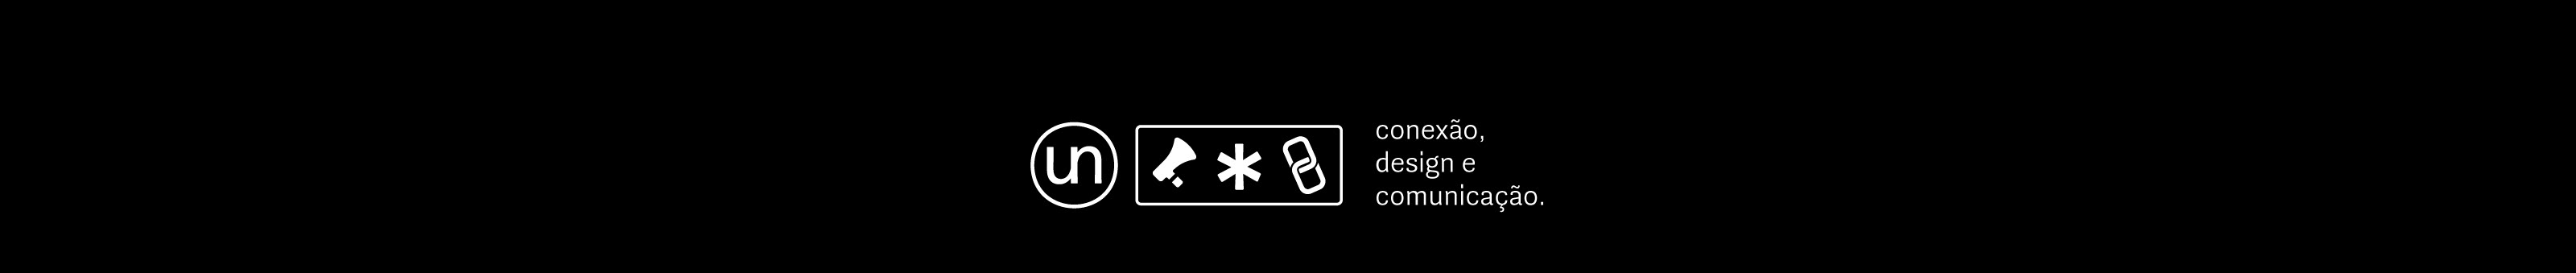 Youne® Comunicação & Design's profile banner